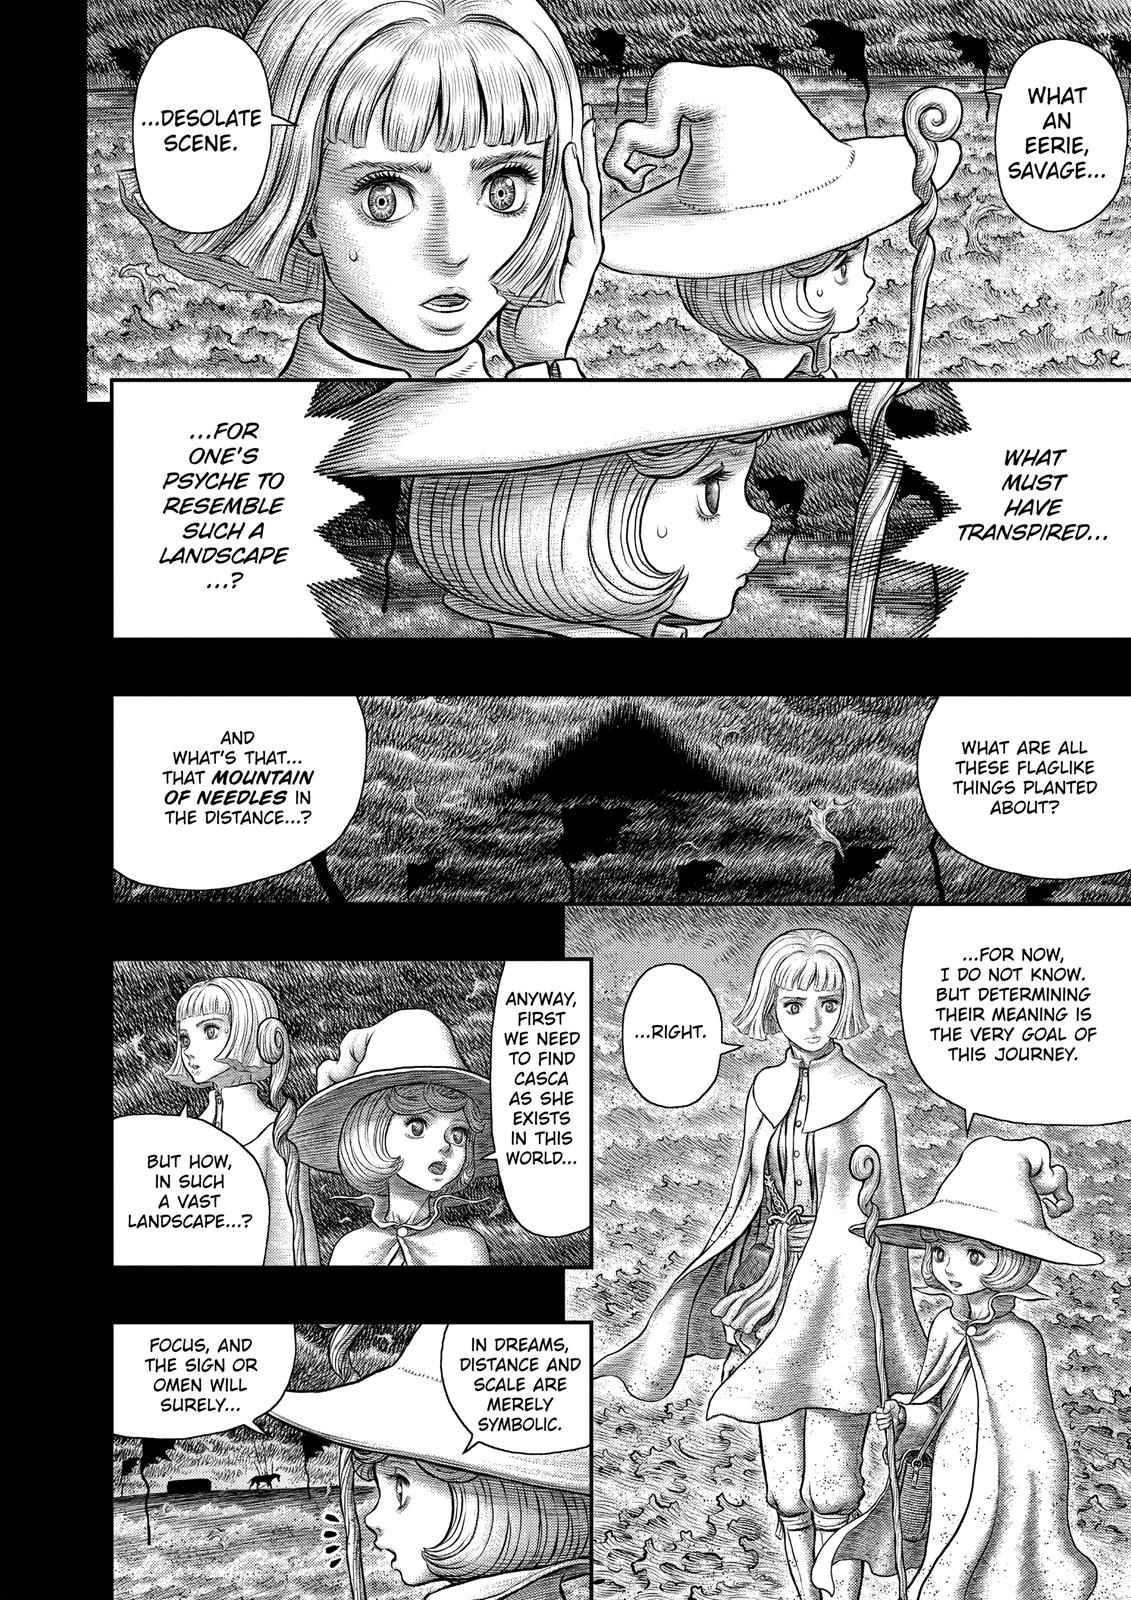 Berserk Manga Chapter 348 image 04